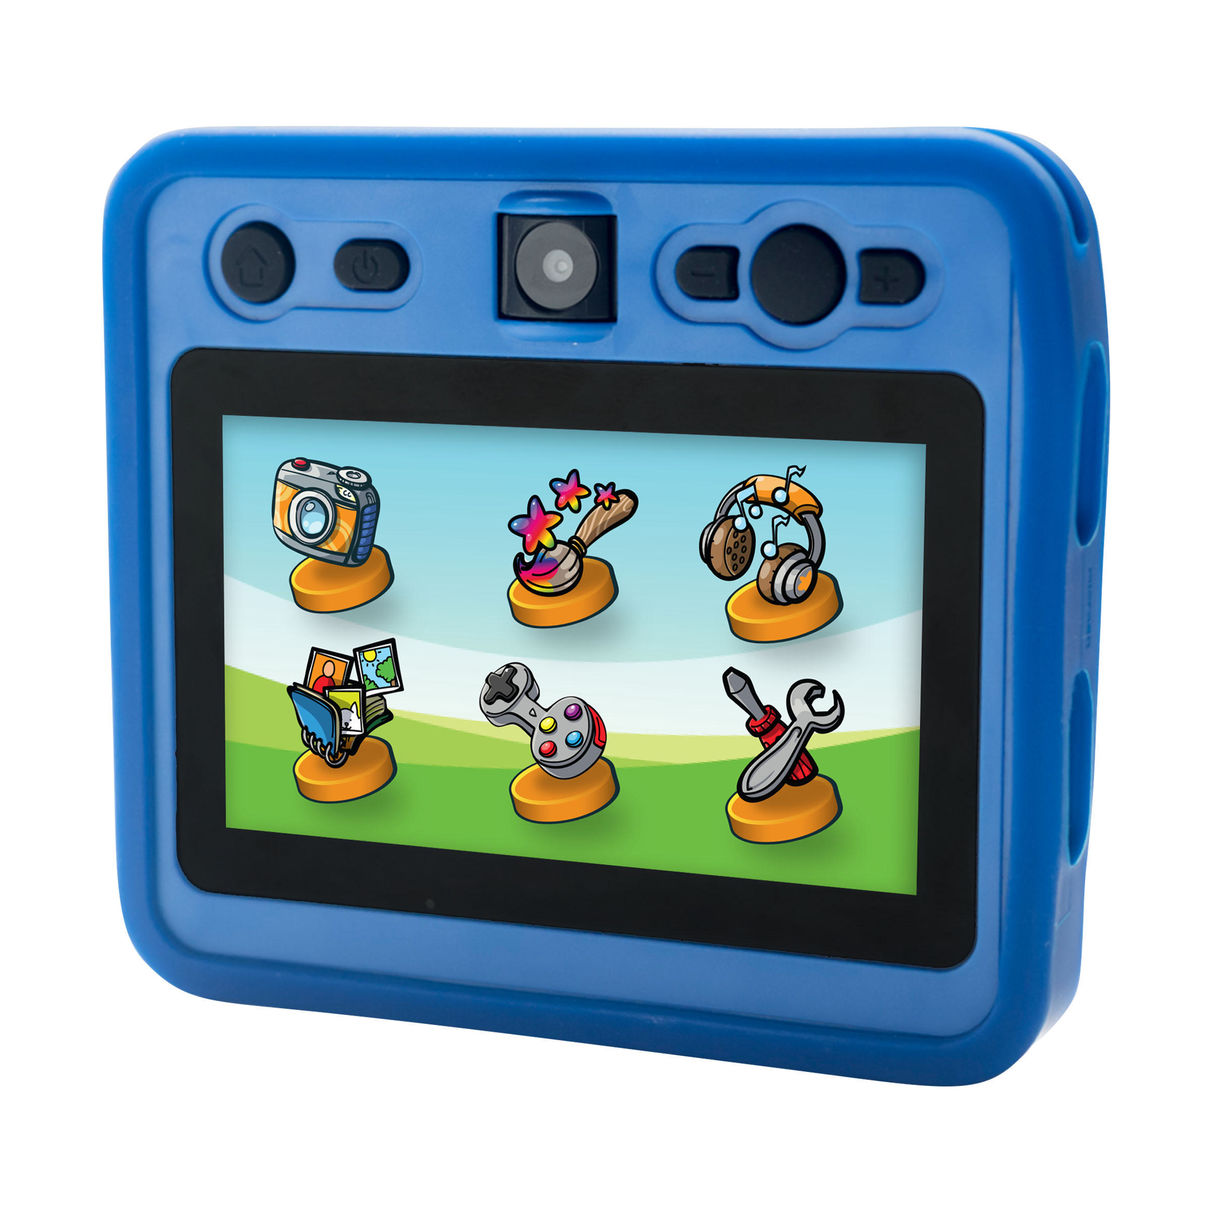 kurio snap camera the ultimate digital camera built for kids blue 6ECB74E7.zoom